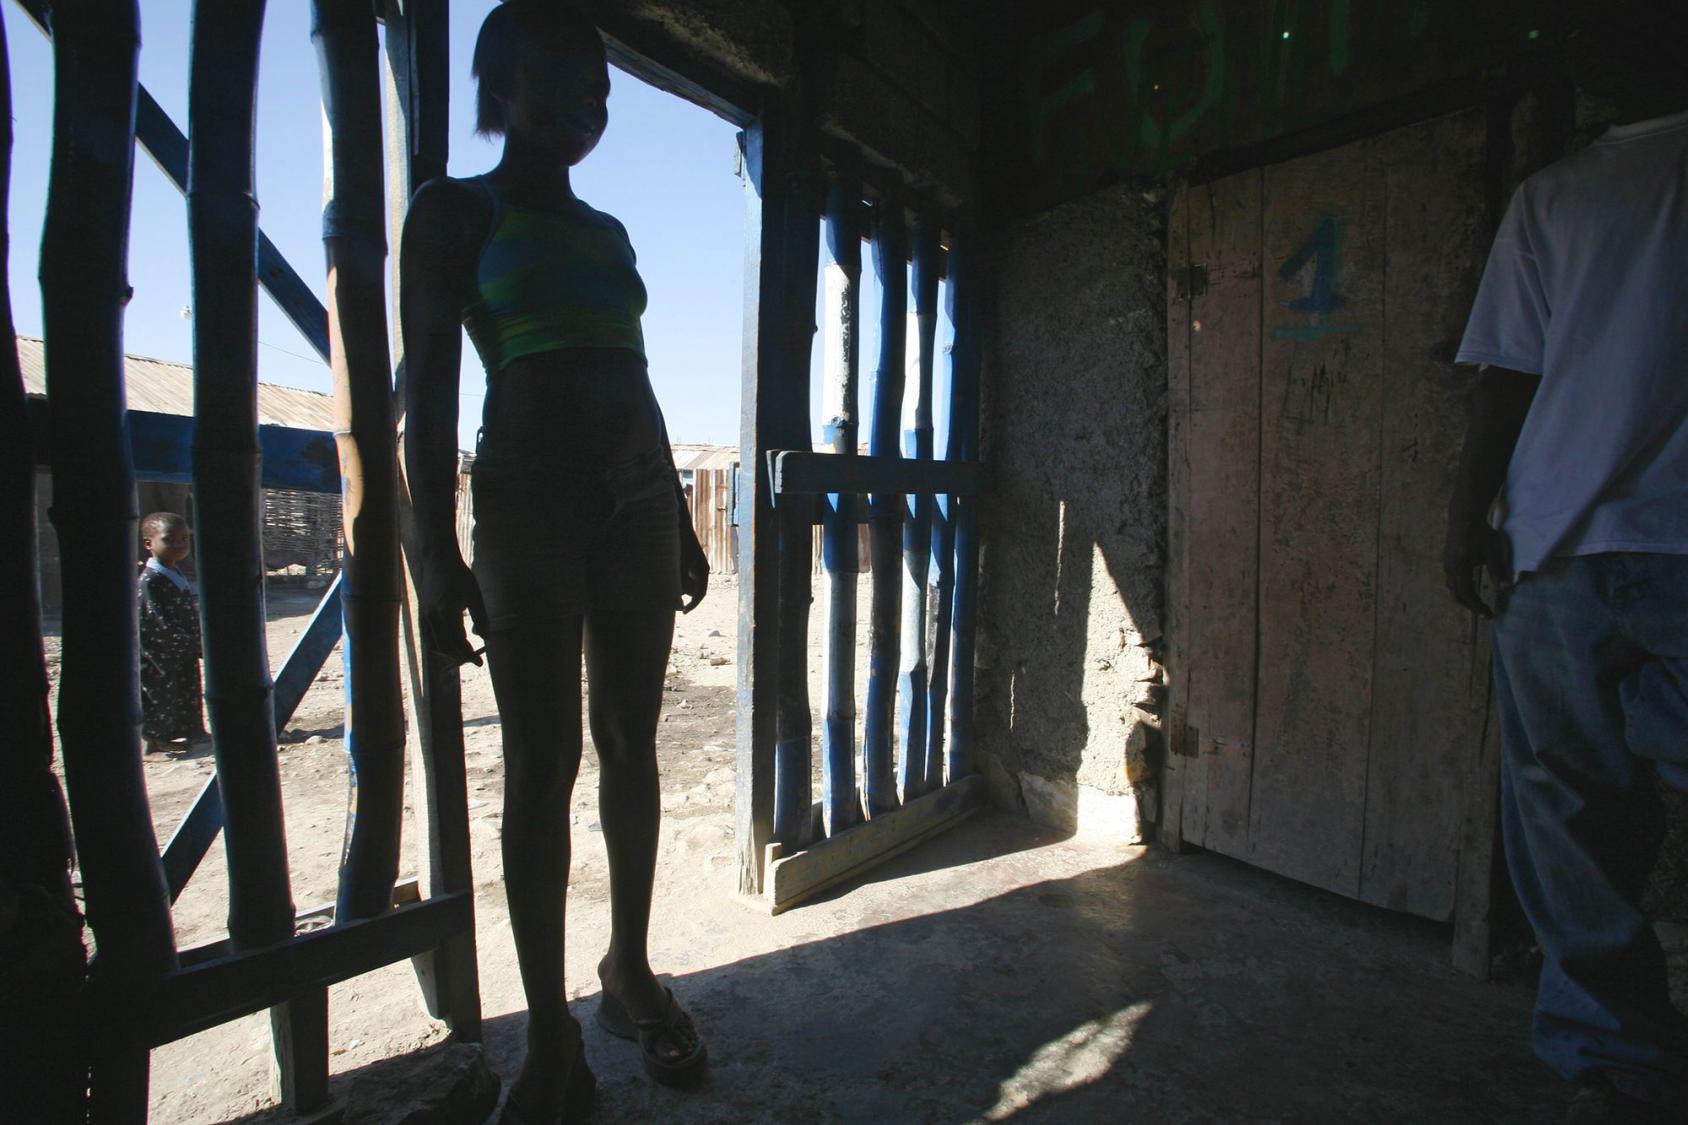 امرأة شابة تقف على عتبة مدخل مصنوع من قضبان خشبية.